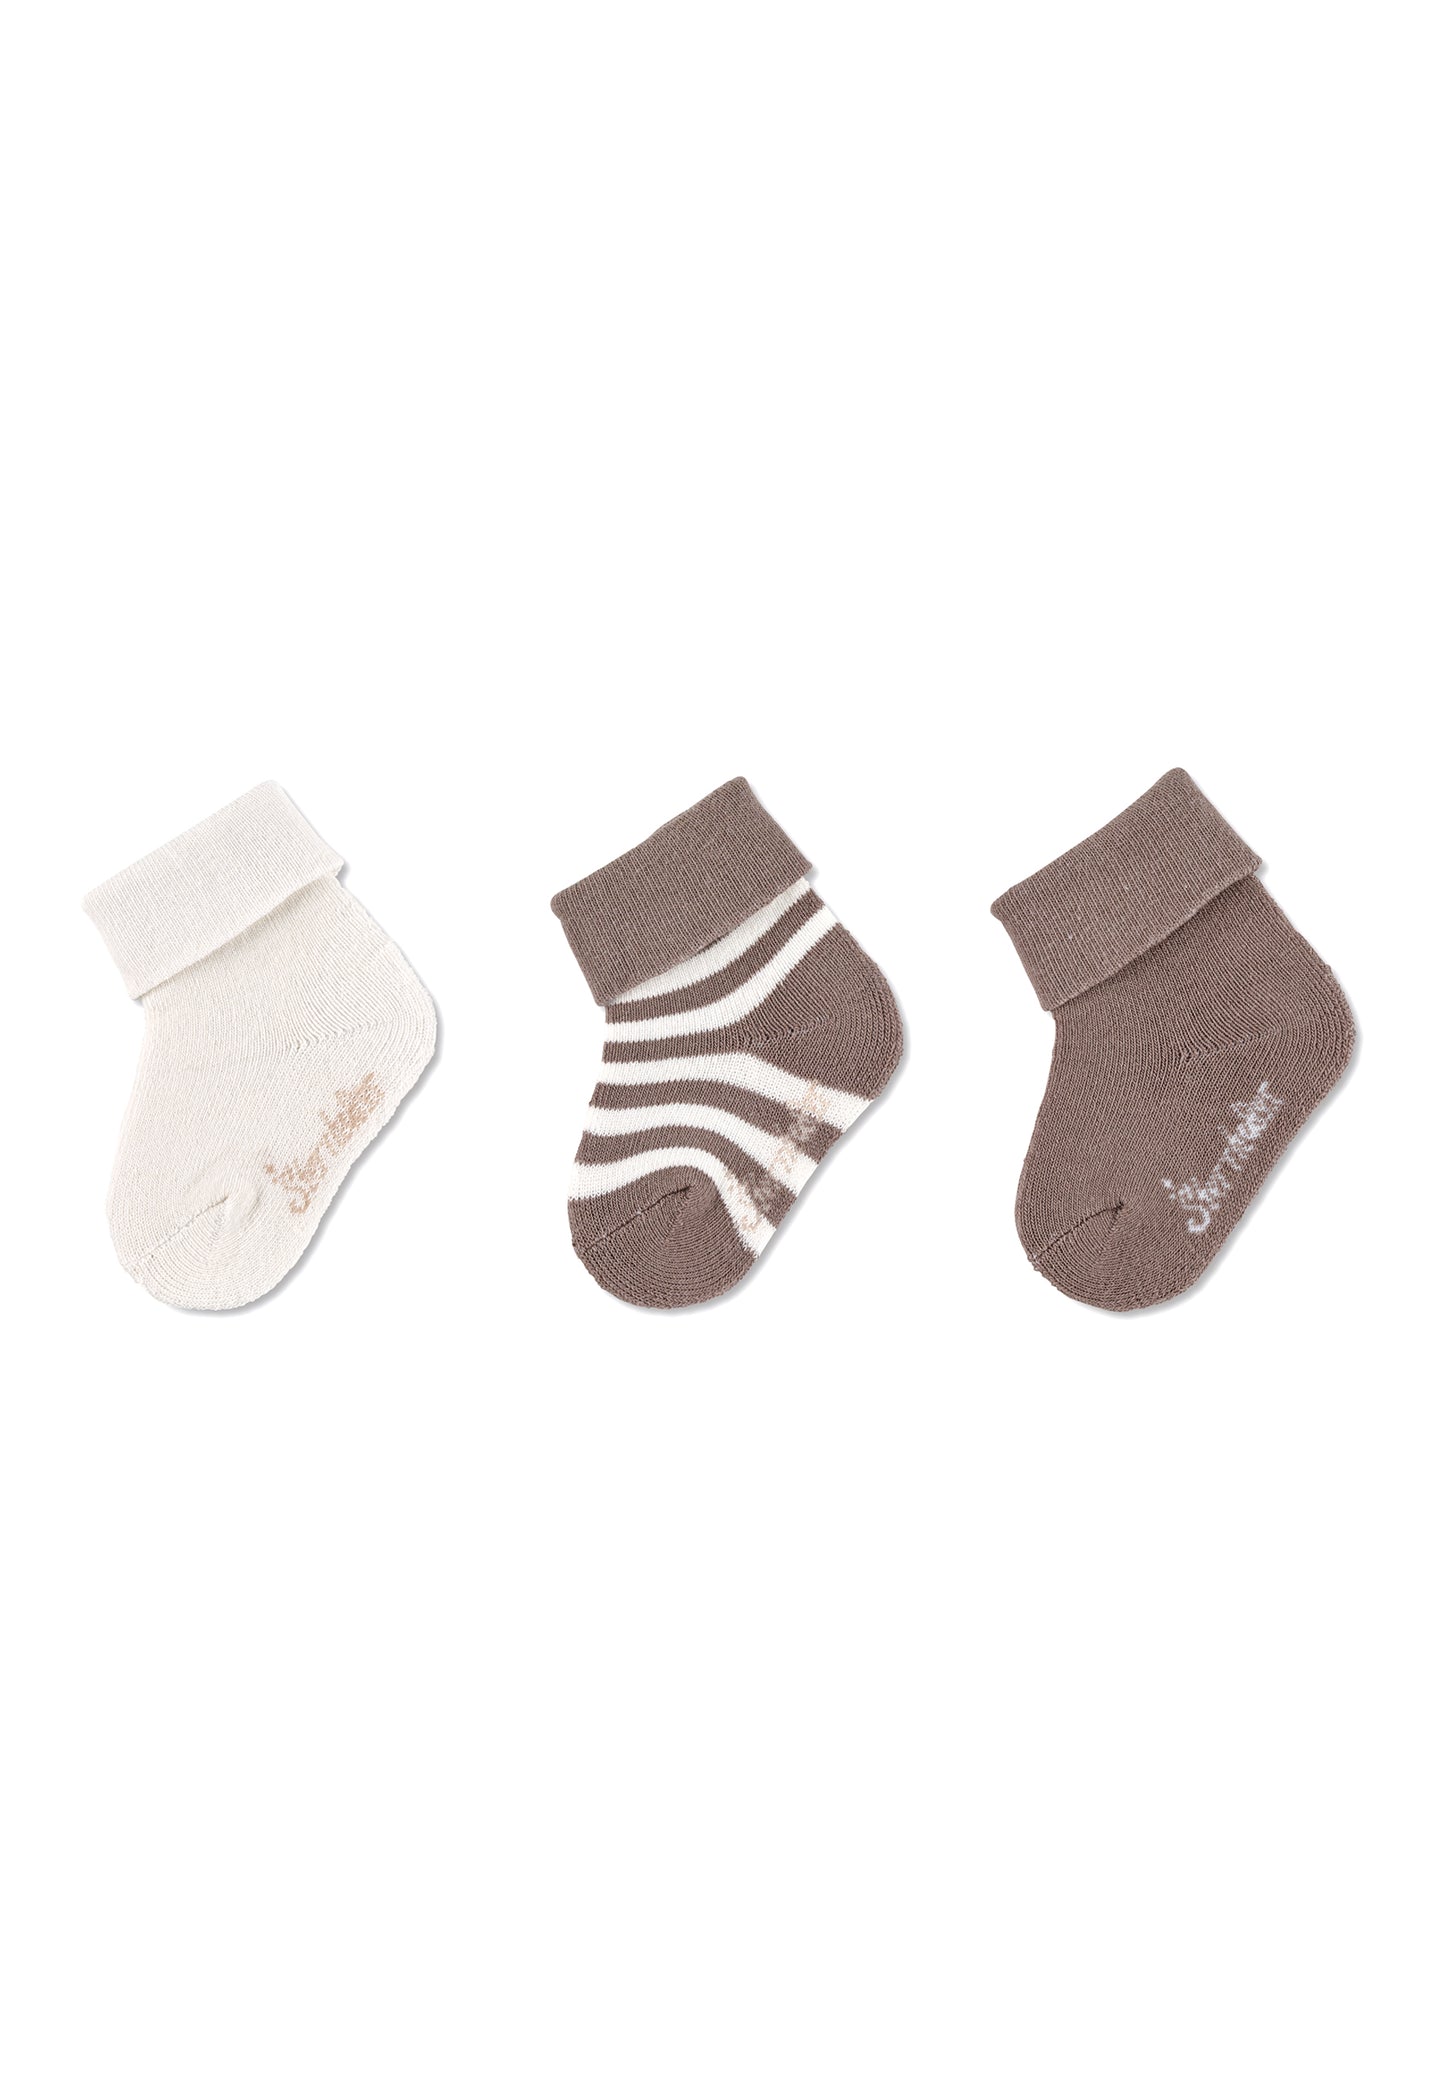 GOTS Baby-Socken Ringel, 3er-Pack